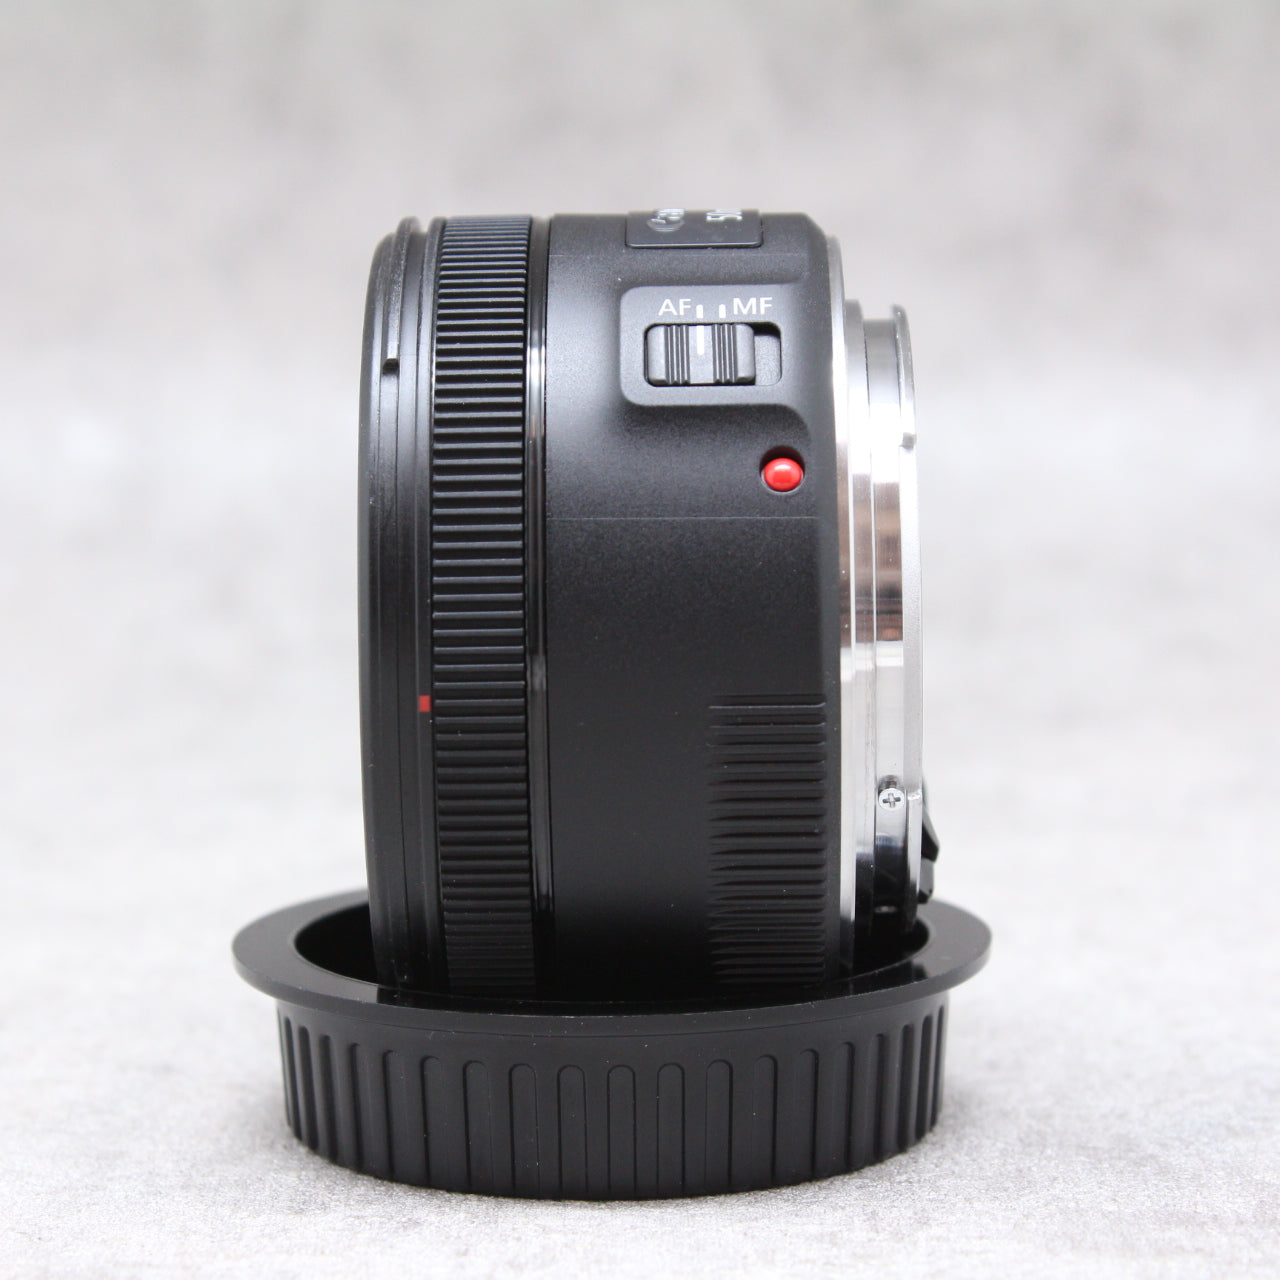 中古品 Canon EF 50mm F1.8 STM 【10月25日(火)のYouTube生配信でご紹介】